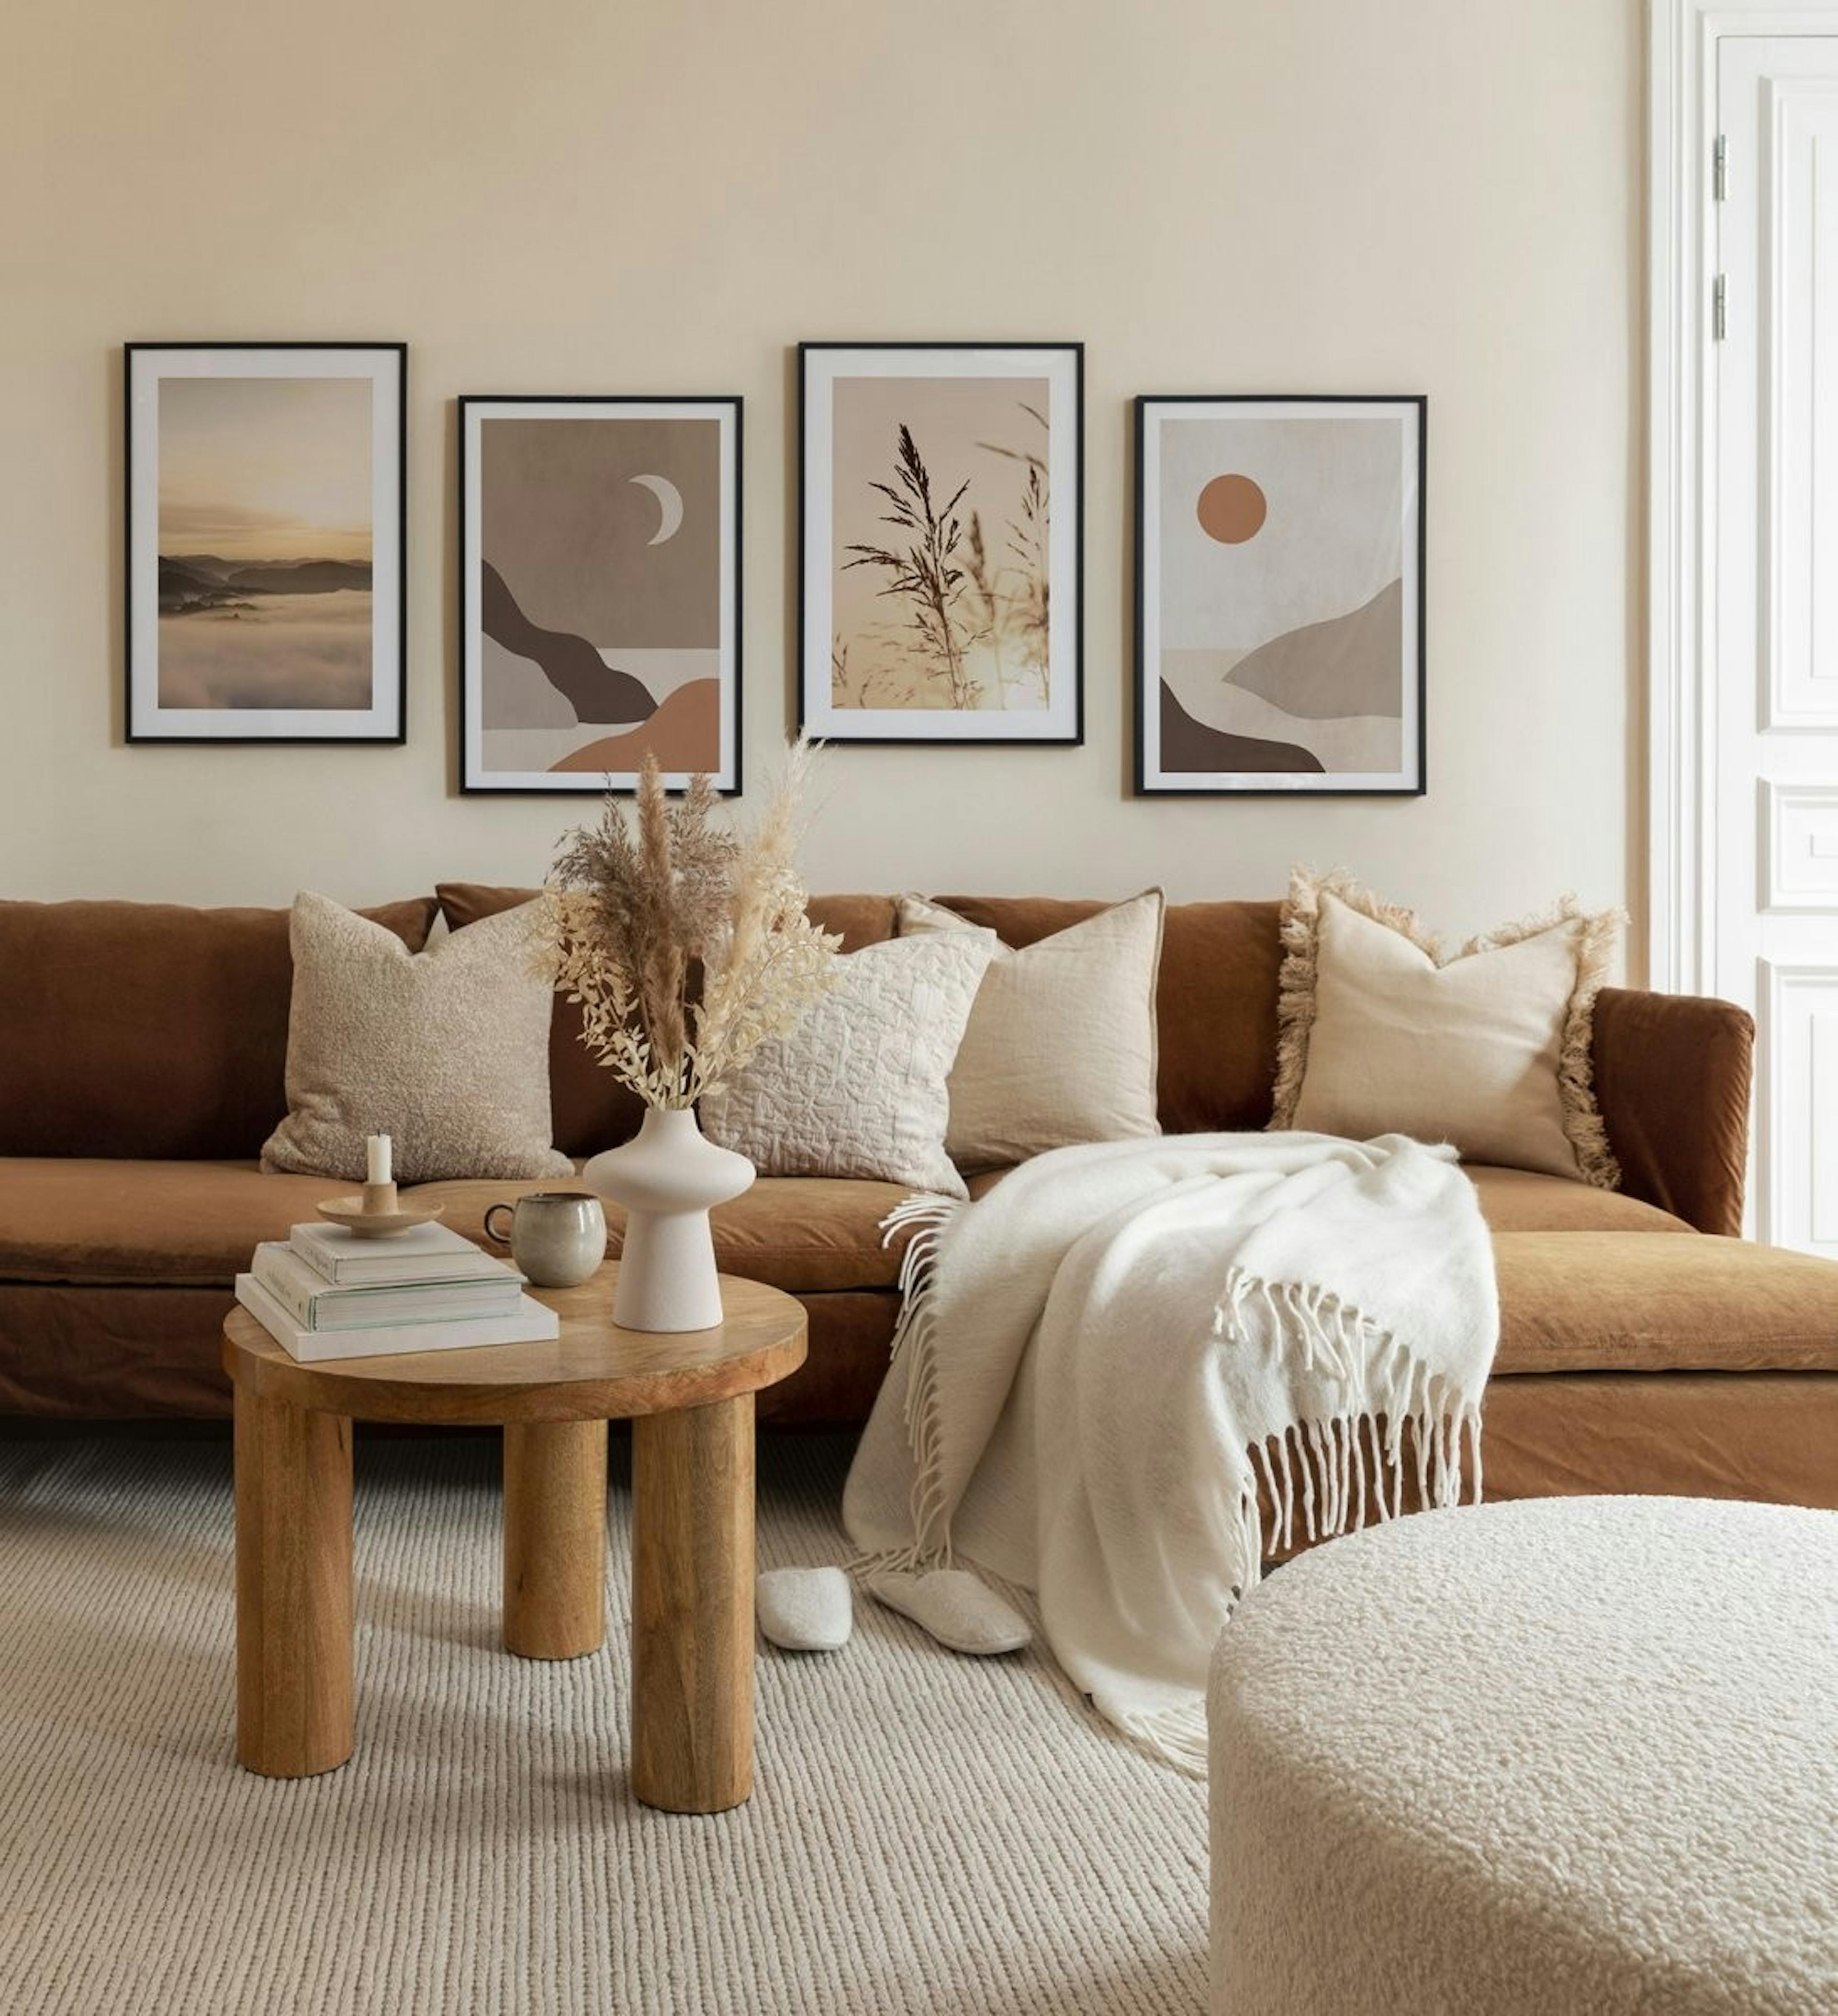 جدار معرض هادئ بألوان بنية وبيج مع مطبوعات طبيعية مع إطارات خشبية داكنة لغرفة المعيشة